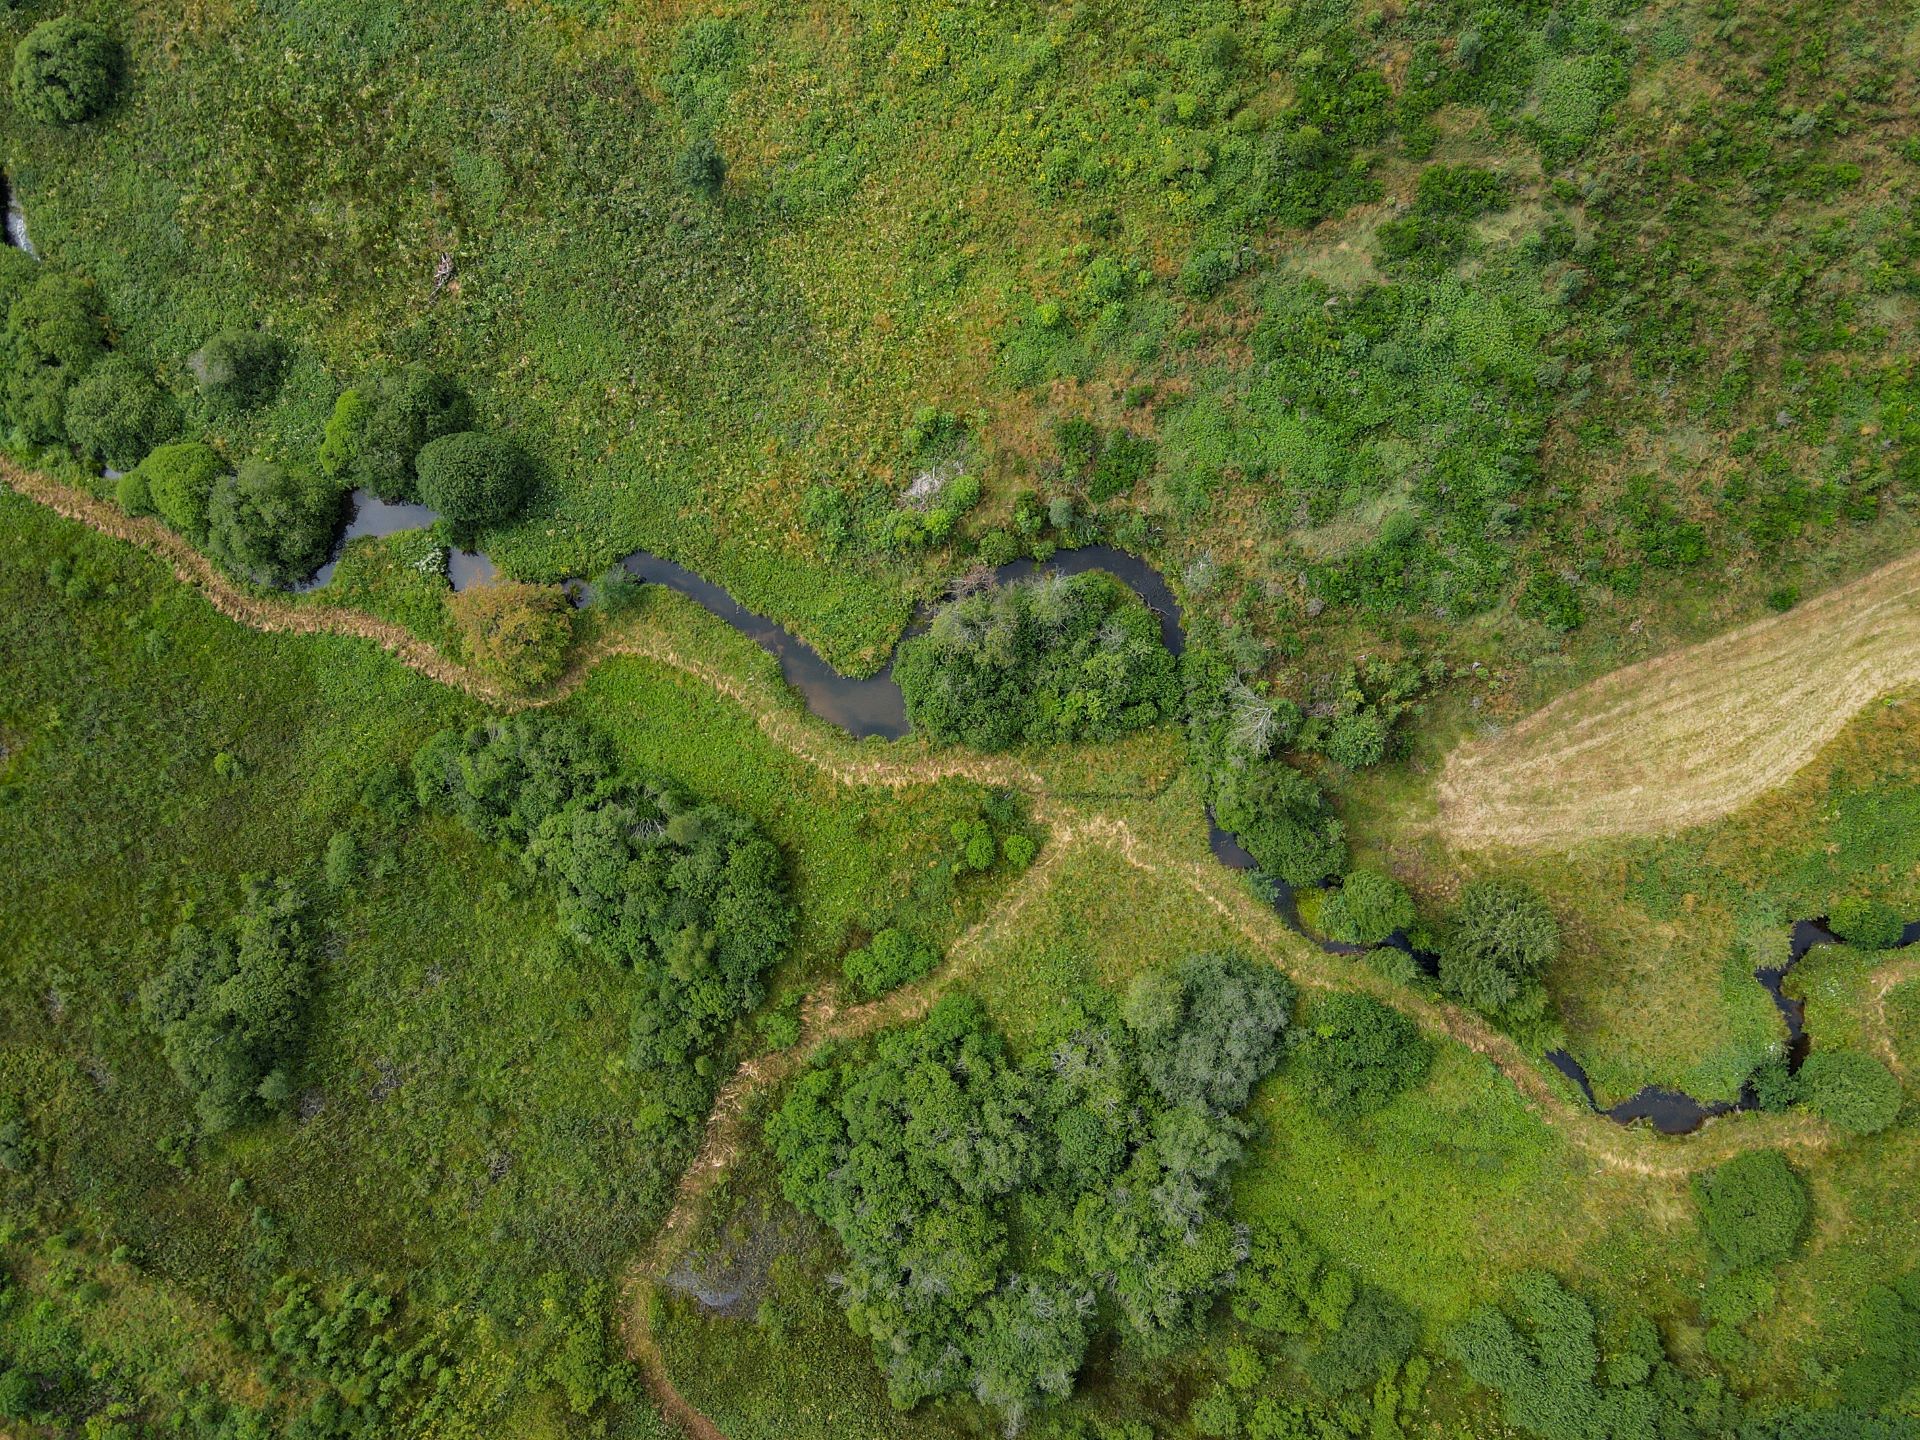 La vallée de Holzwarche est représentée depuis une perspective de drone. Un ruisseau serpente à travers une prairie verte.